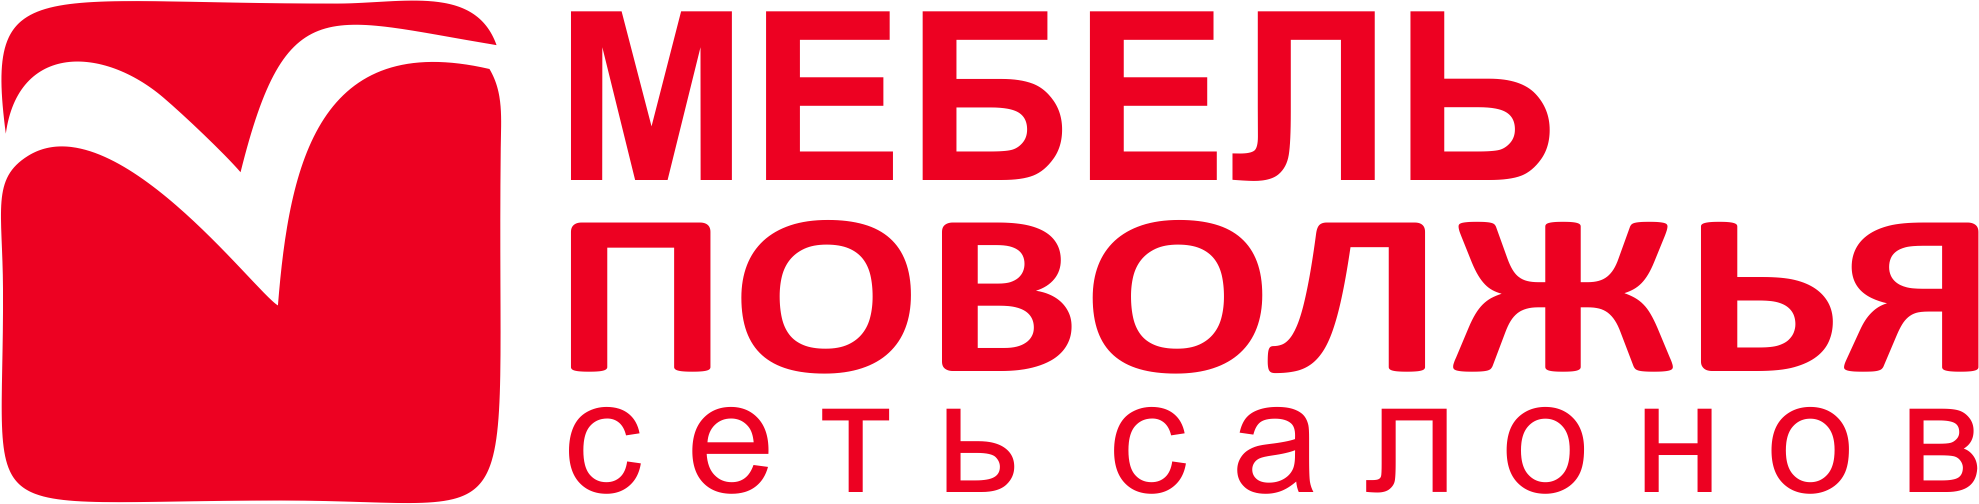 Логотип Мебель Поволжья